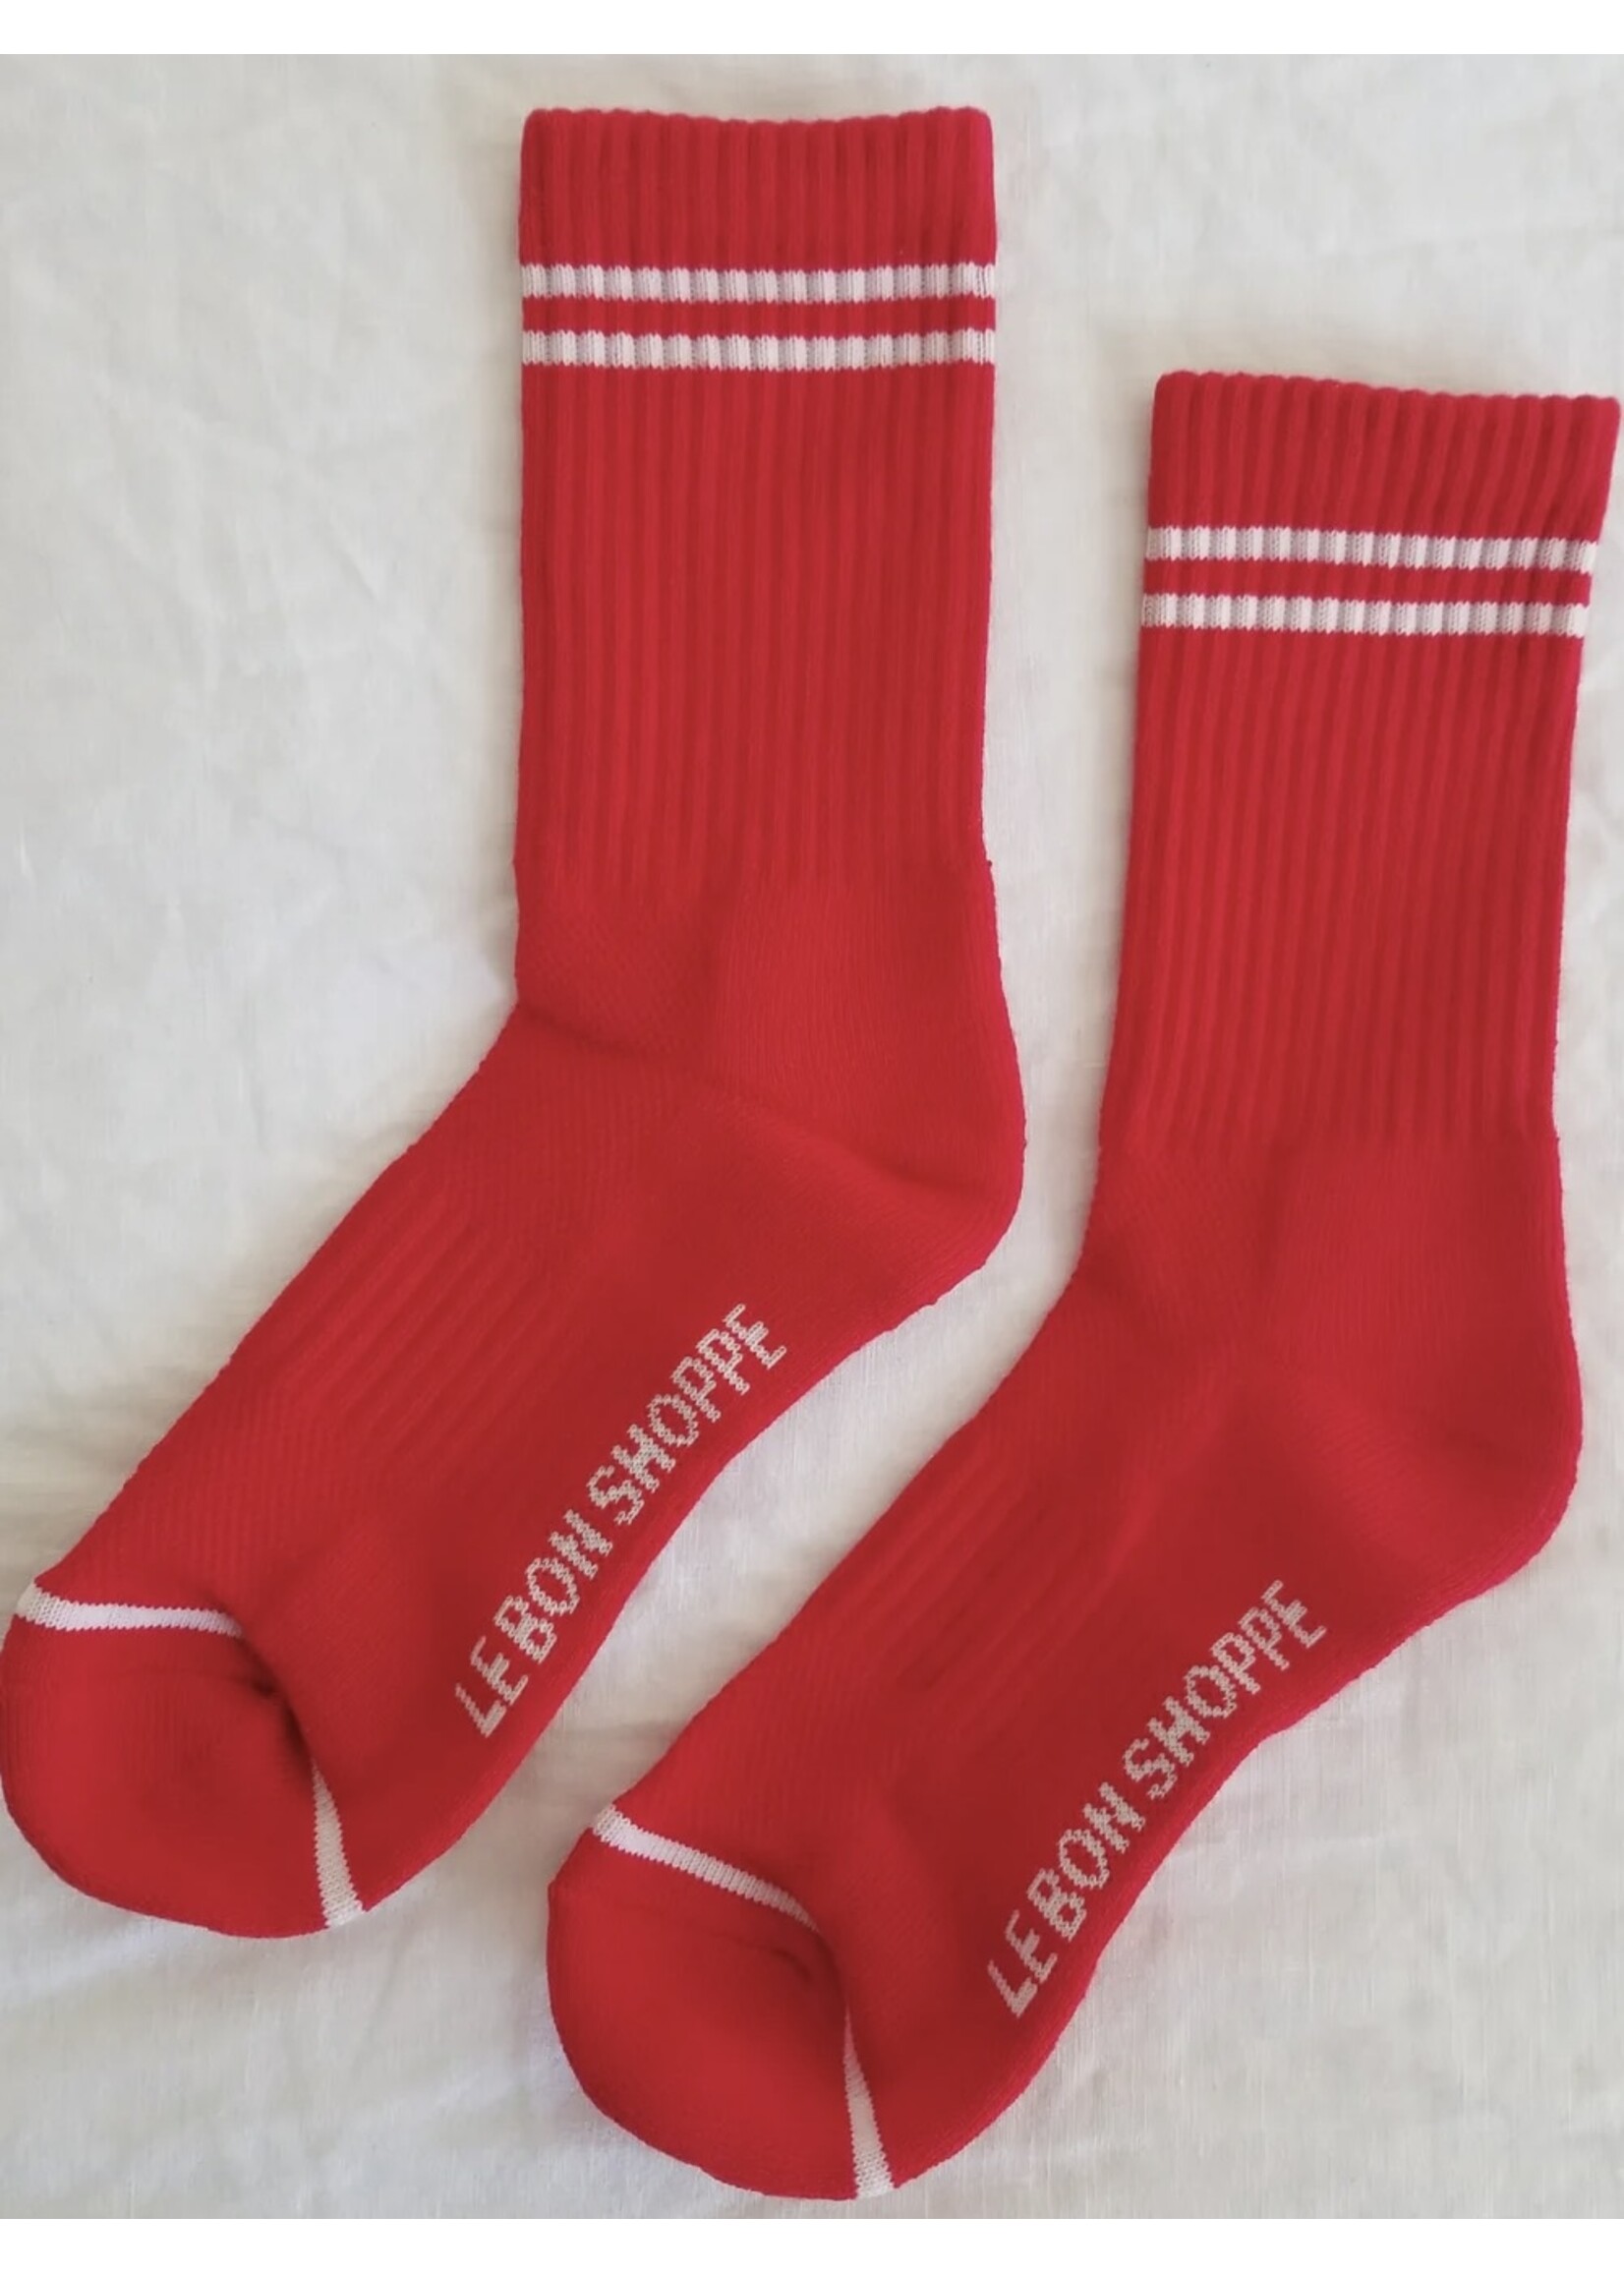 Le Bon Shoppe "Boyfriend" socks by Le Bon Shoppe